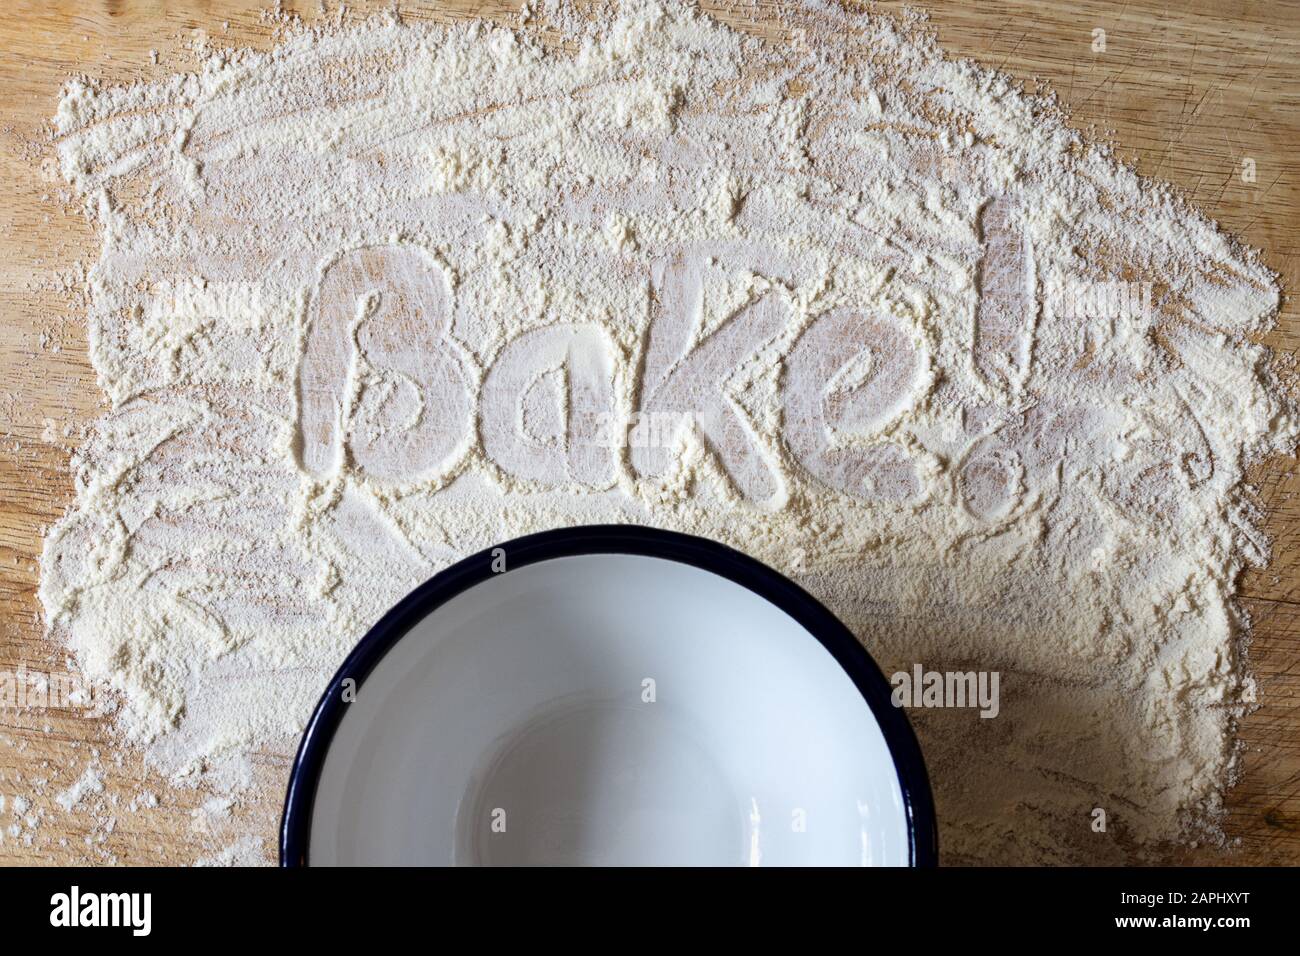 La palabra 'Bake!' escrita a mano en harina esparcida en una tabla de cortar de madera con un tazón de esmalte vacío abajo. Fotografía aérea. Foto de stock